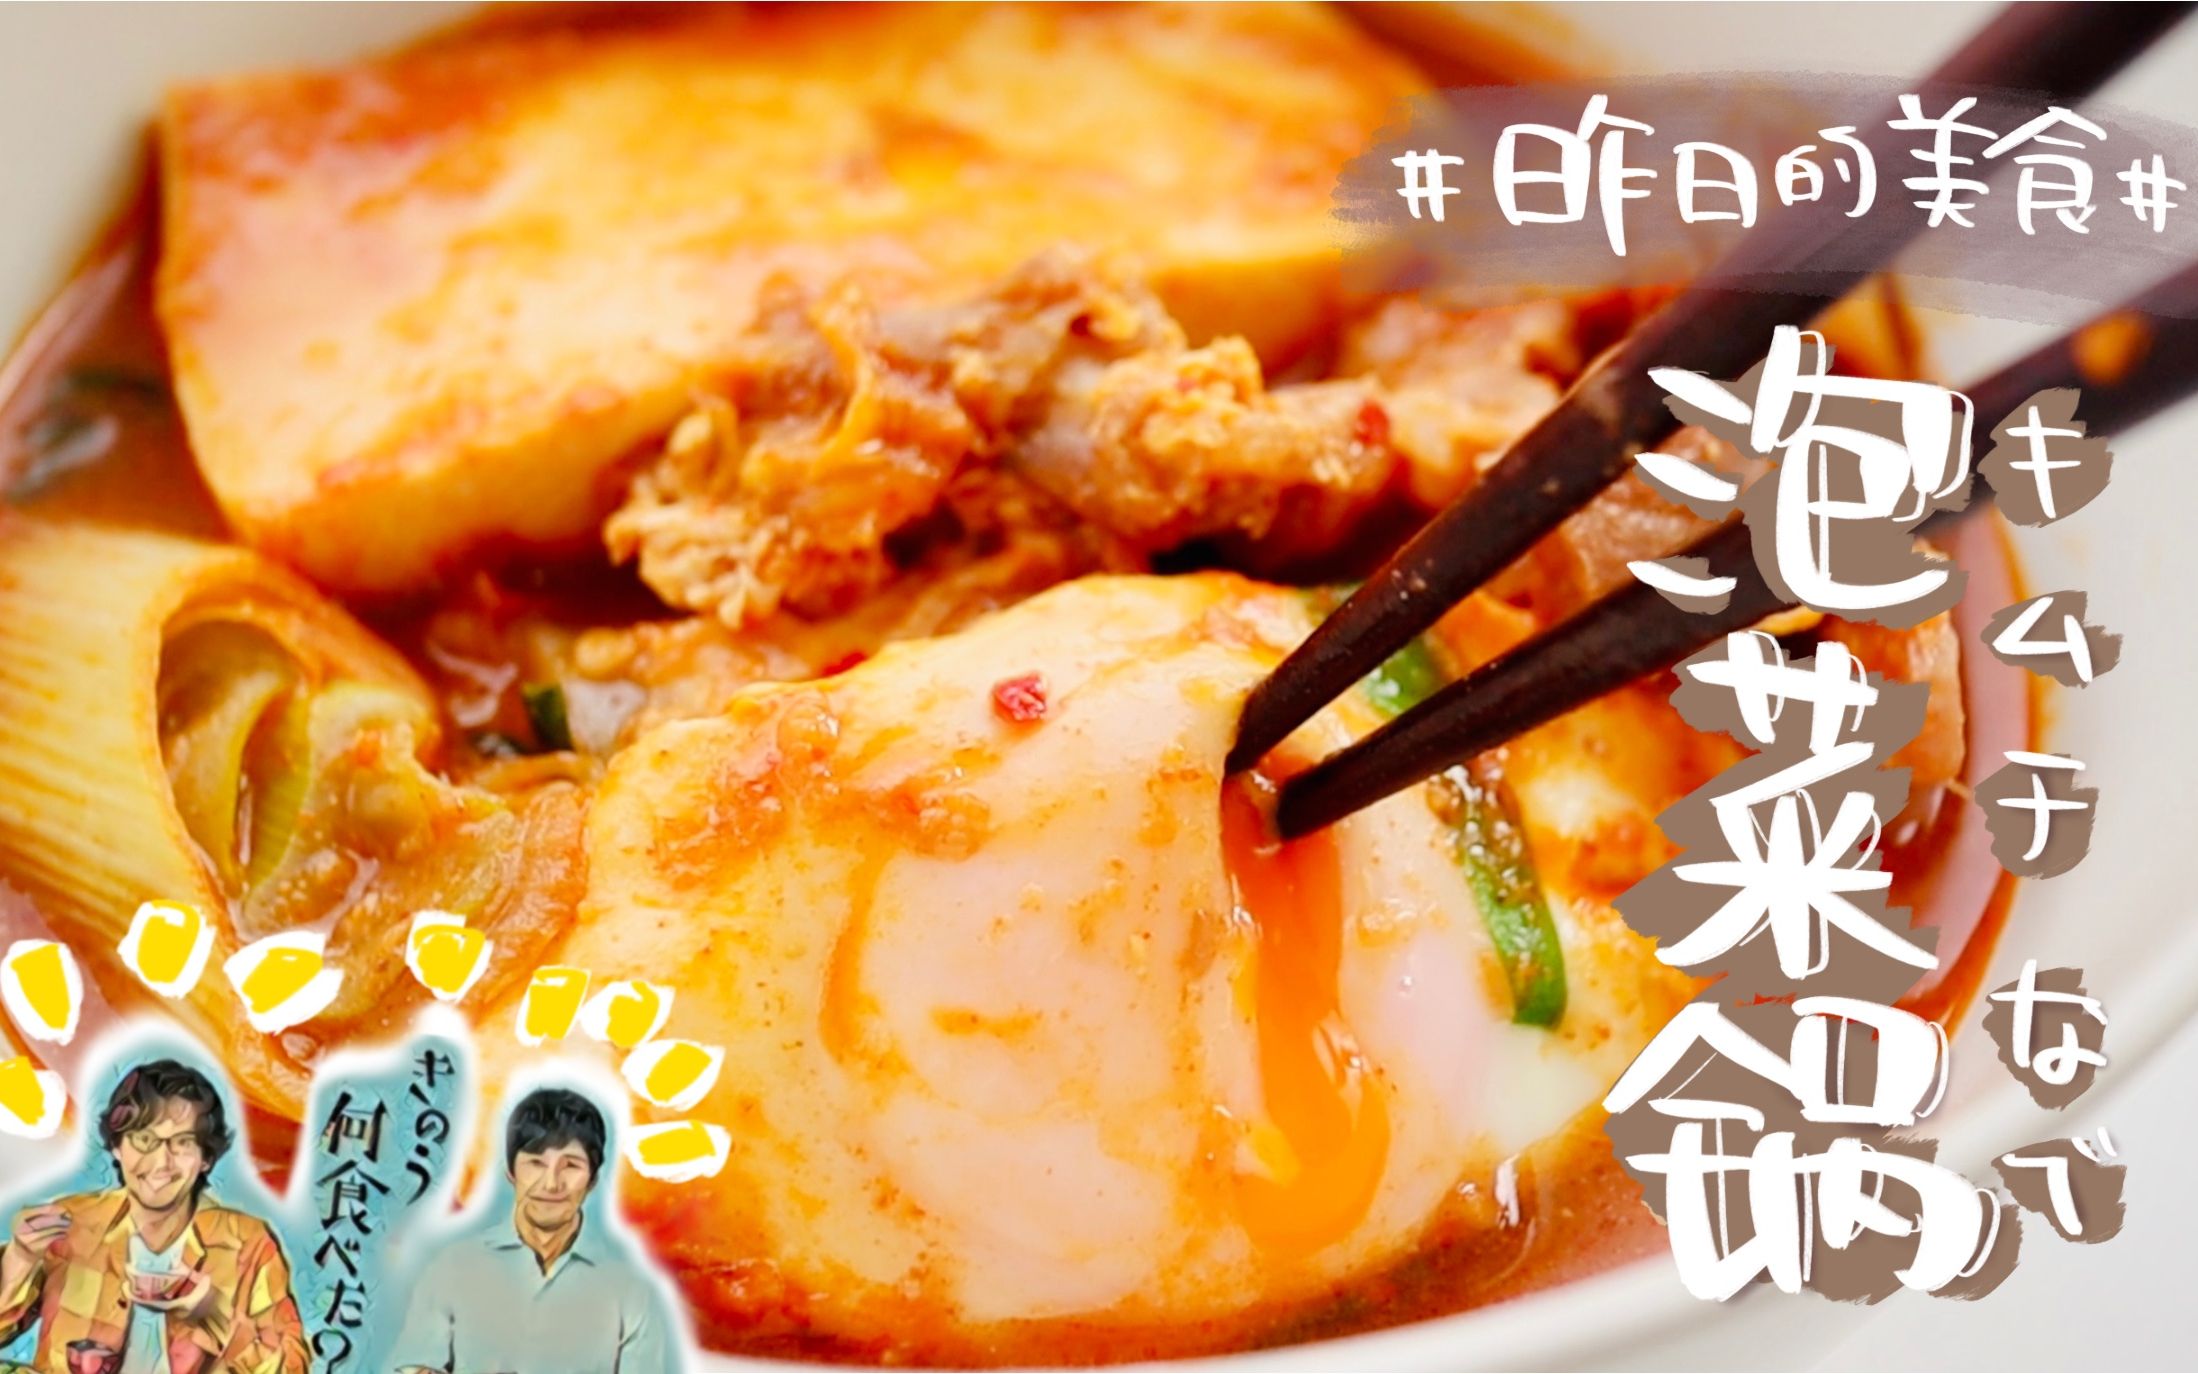 【轻食堂】「昨日的美食」复刻系列 泡菜锅（中国的我给大家复刻一道日式韩国料理